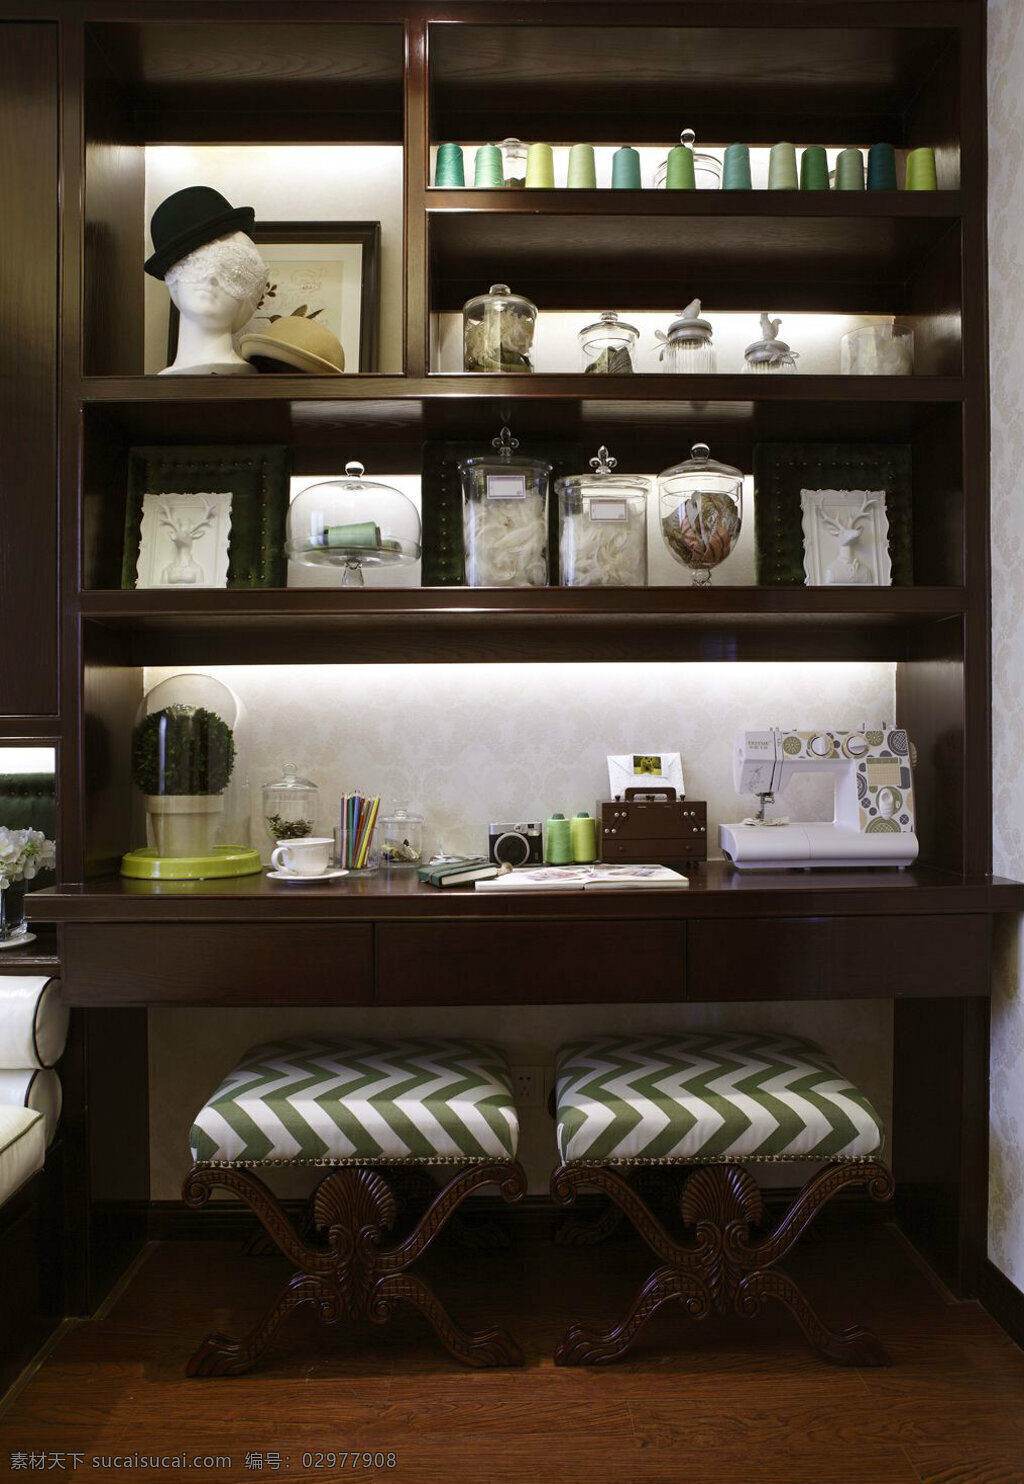 沉稳 气质 棕色 书房 装修 效果图 布艺坐垫 创意摆件 密度板 书籍 相框 棕色书架